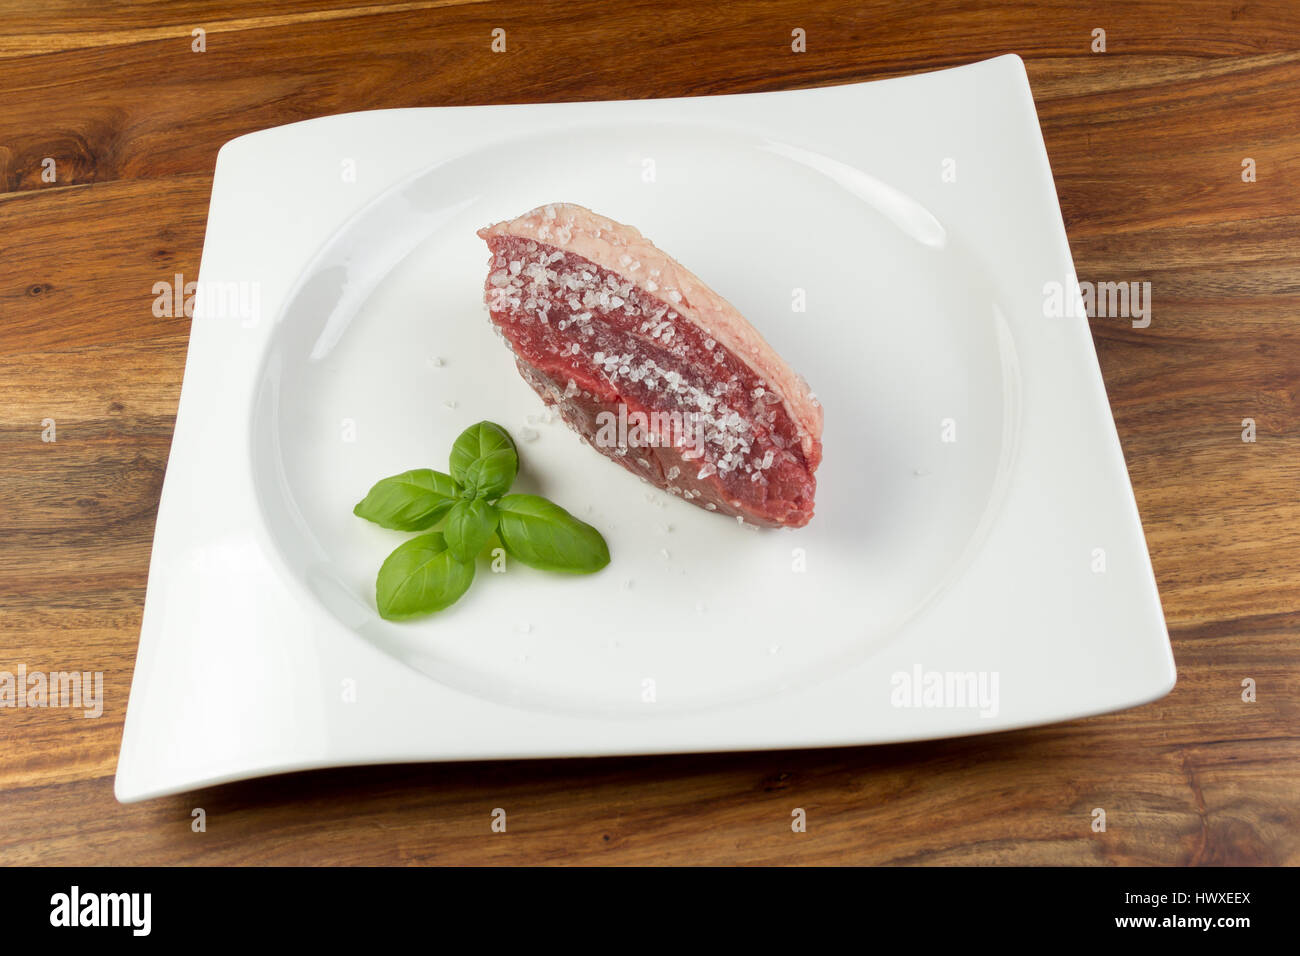 Tranche de viande de vache cru salé (picanha) et les feuilles de basilic sur un plat blanc et table en bois naturel d'époque - gros sel était utilisé Banque D'Images